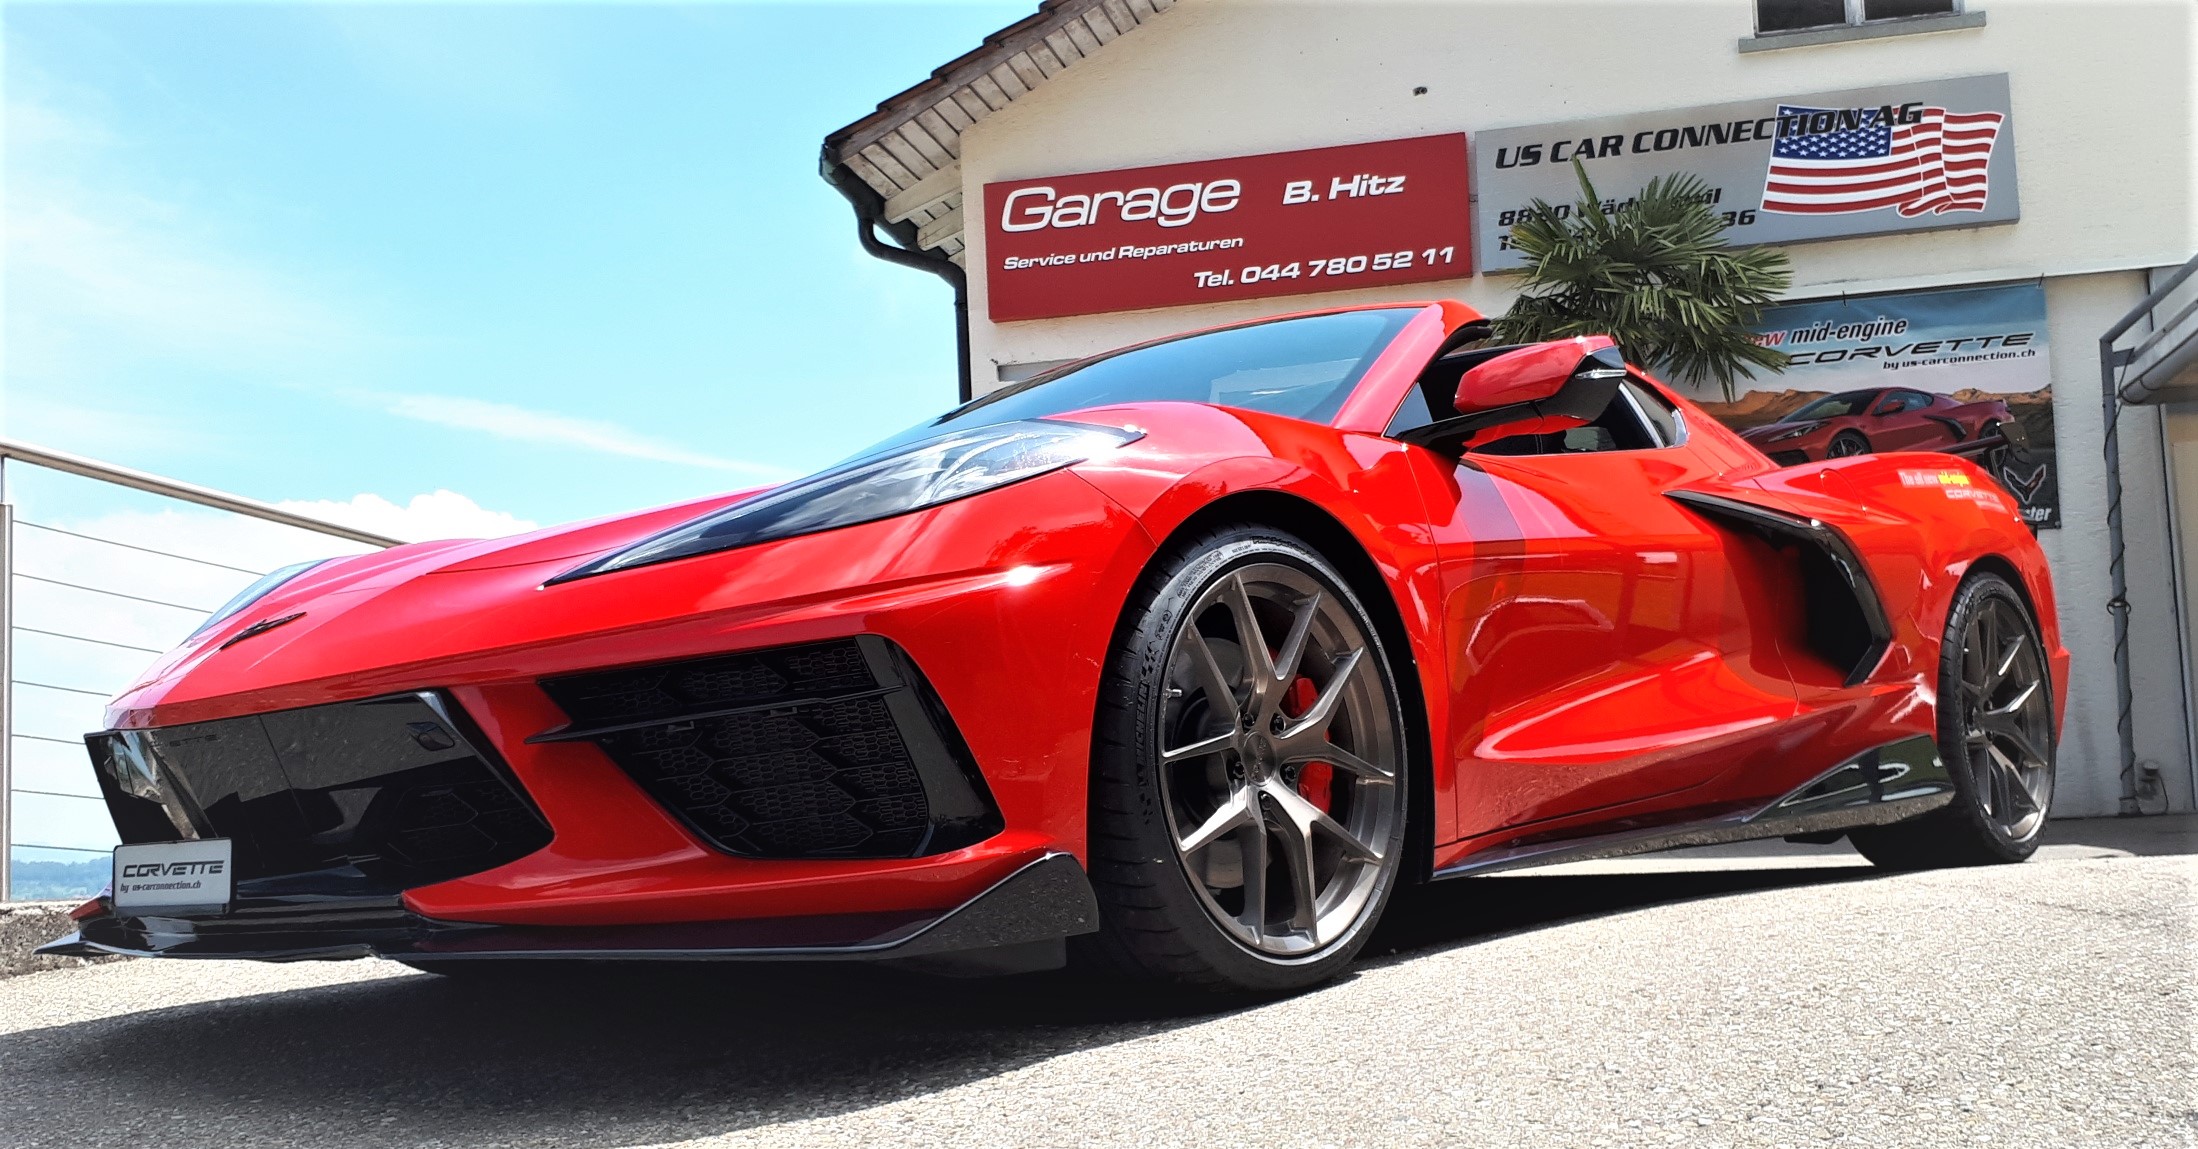 The new Corvette C8 Stingray R   -  Race inspired!